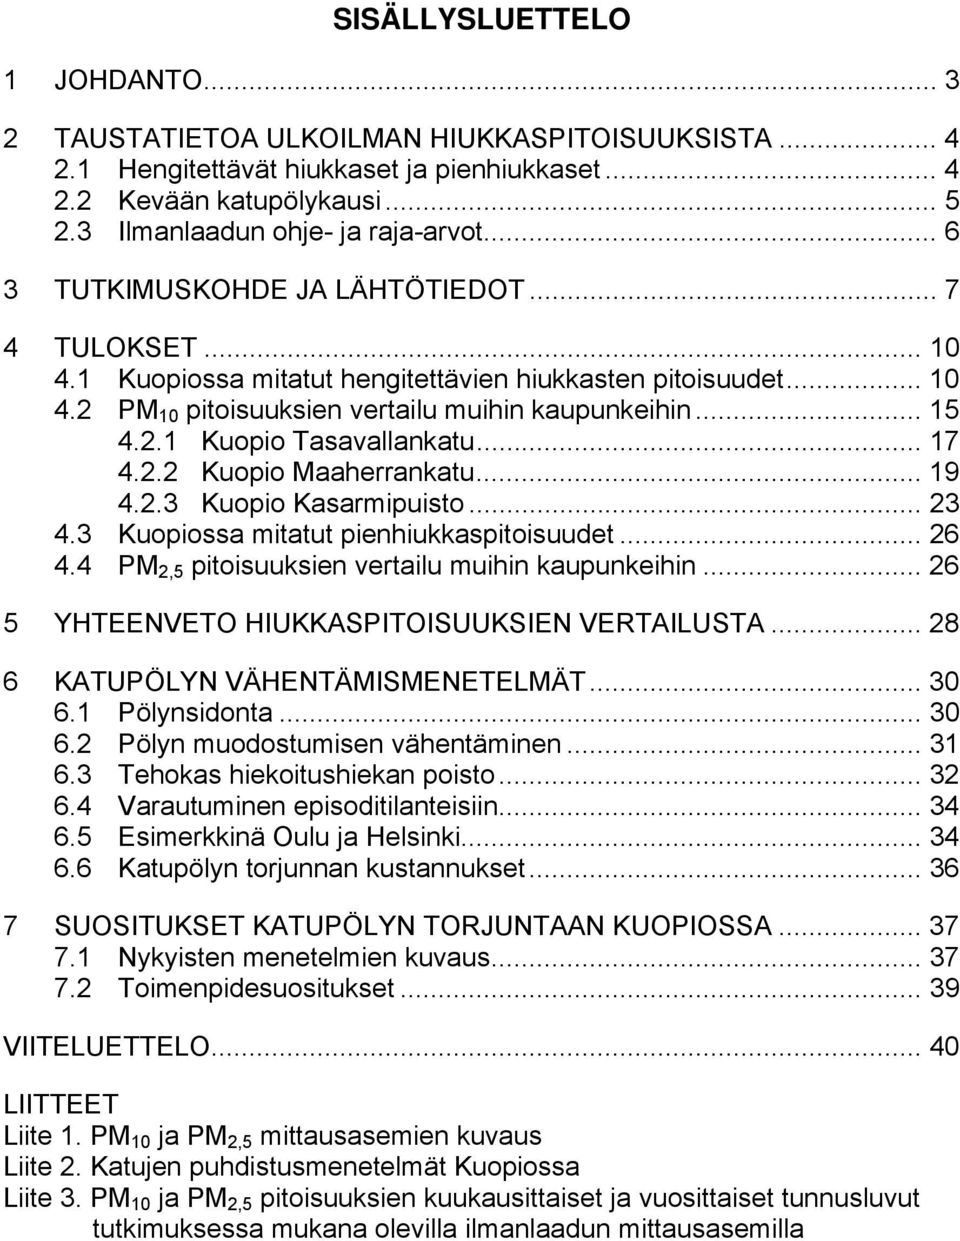 .. 15 4.2.1 Kuopio Tasavallankatu... 17 4.2.2 Kuopio Maaherrankatu... 19 4.2.3 Kuopio Kasarmipuisto... 23 4.3 Kuopiossa mitatut pienhiukkaspitoisuudet... 26 4.